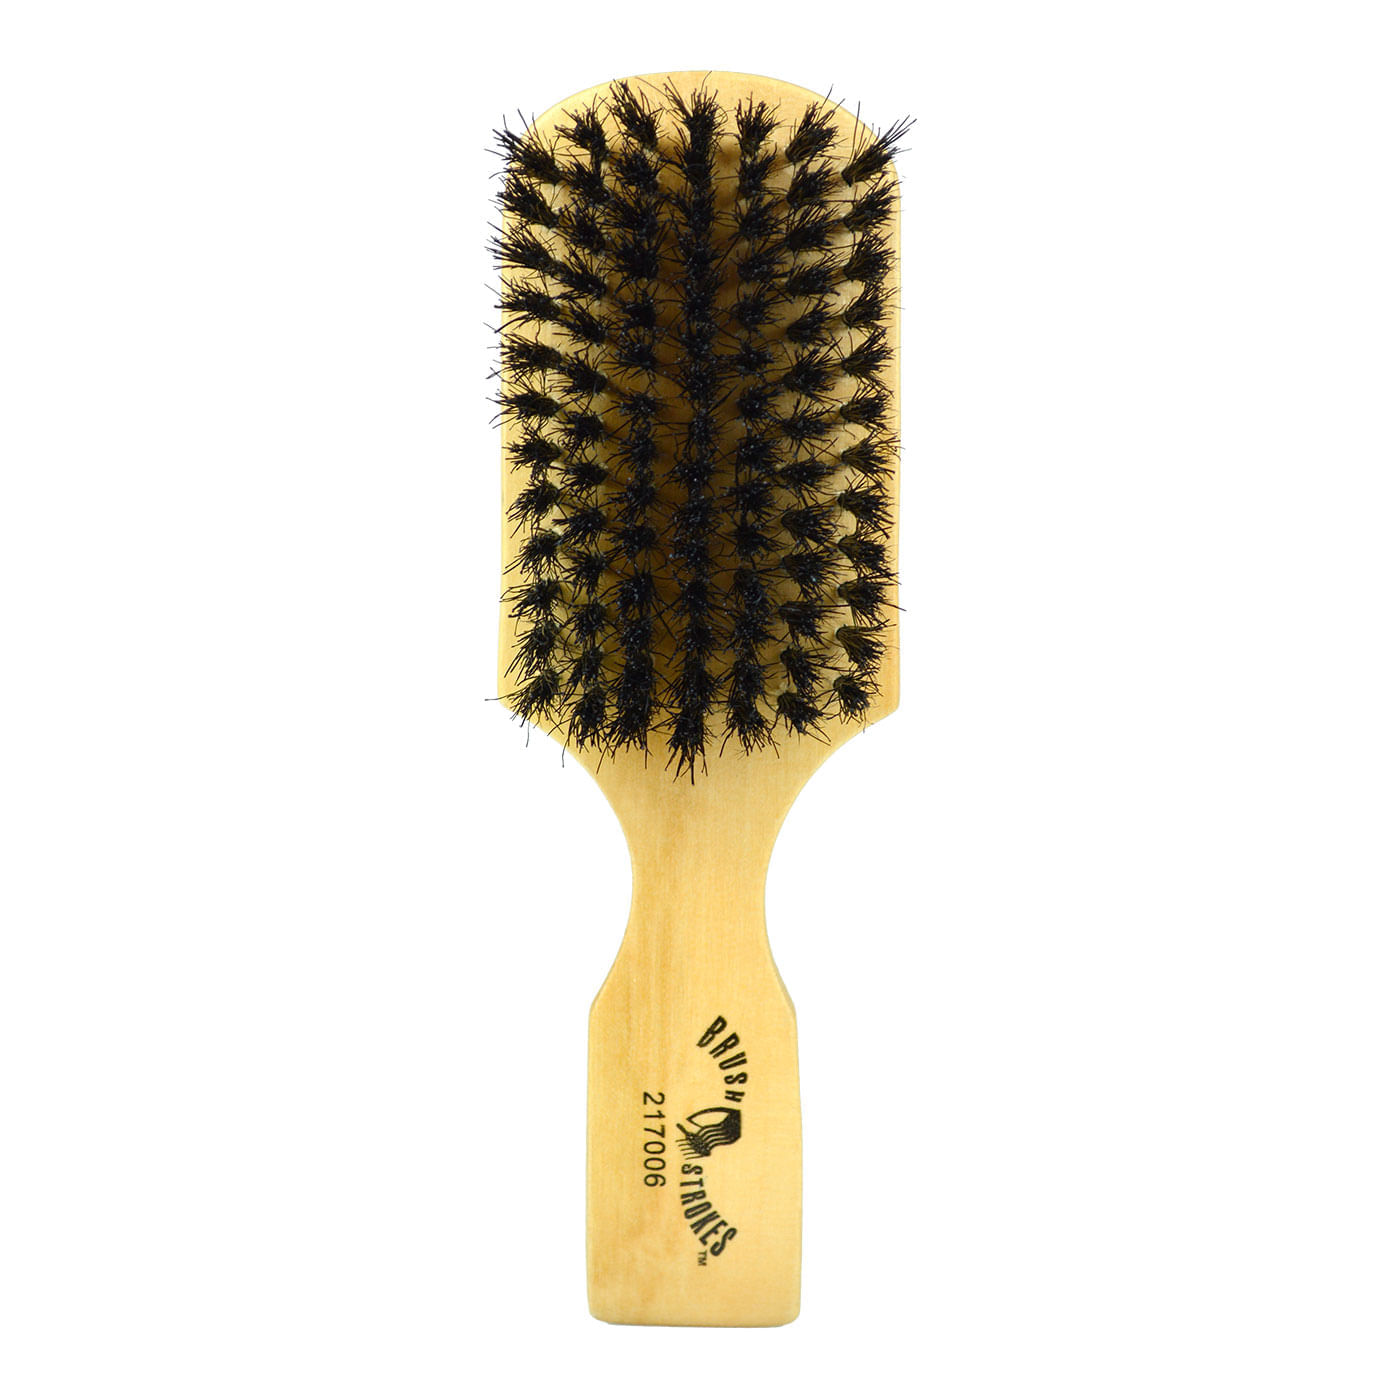 Cepillo de cerdas de jabalí para mujeres, hombres y niños, cepillo de  cerdas naturales suaves para cabello fino y fino, restaura el brillo y la